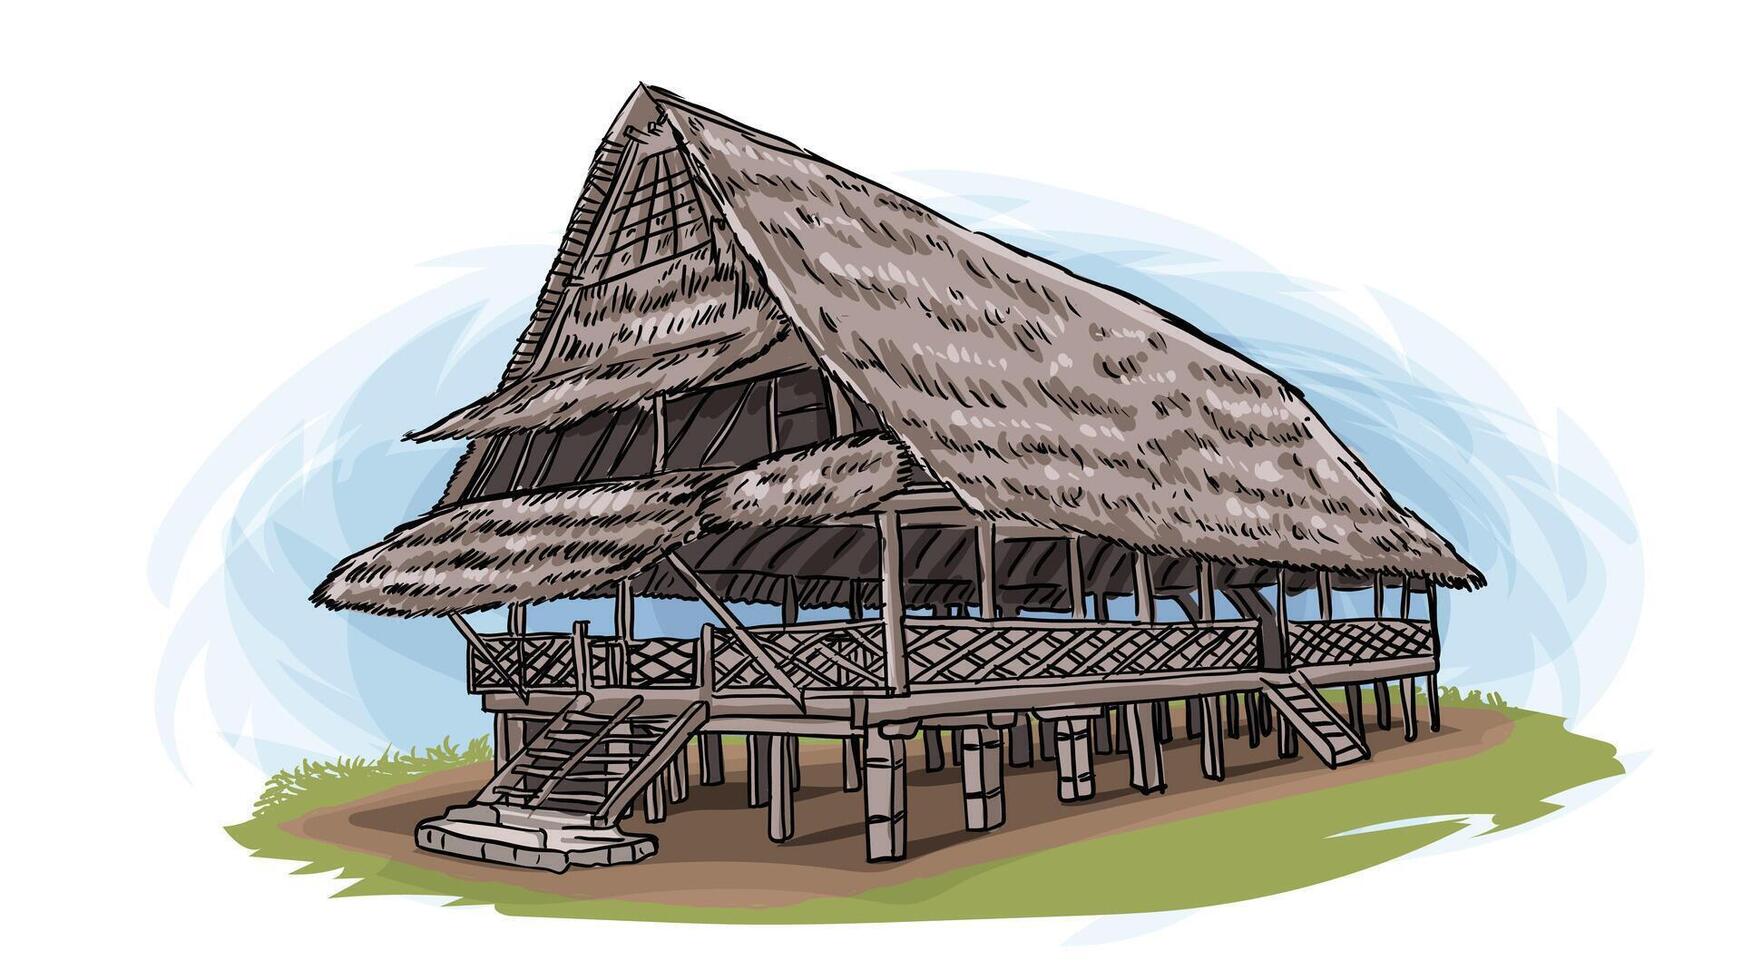 rumah bailo tradicional casa de maluku Indonesia dibujos animados mano dibujado ilustración vector